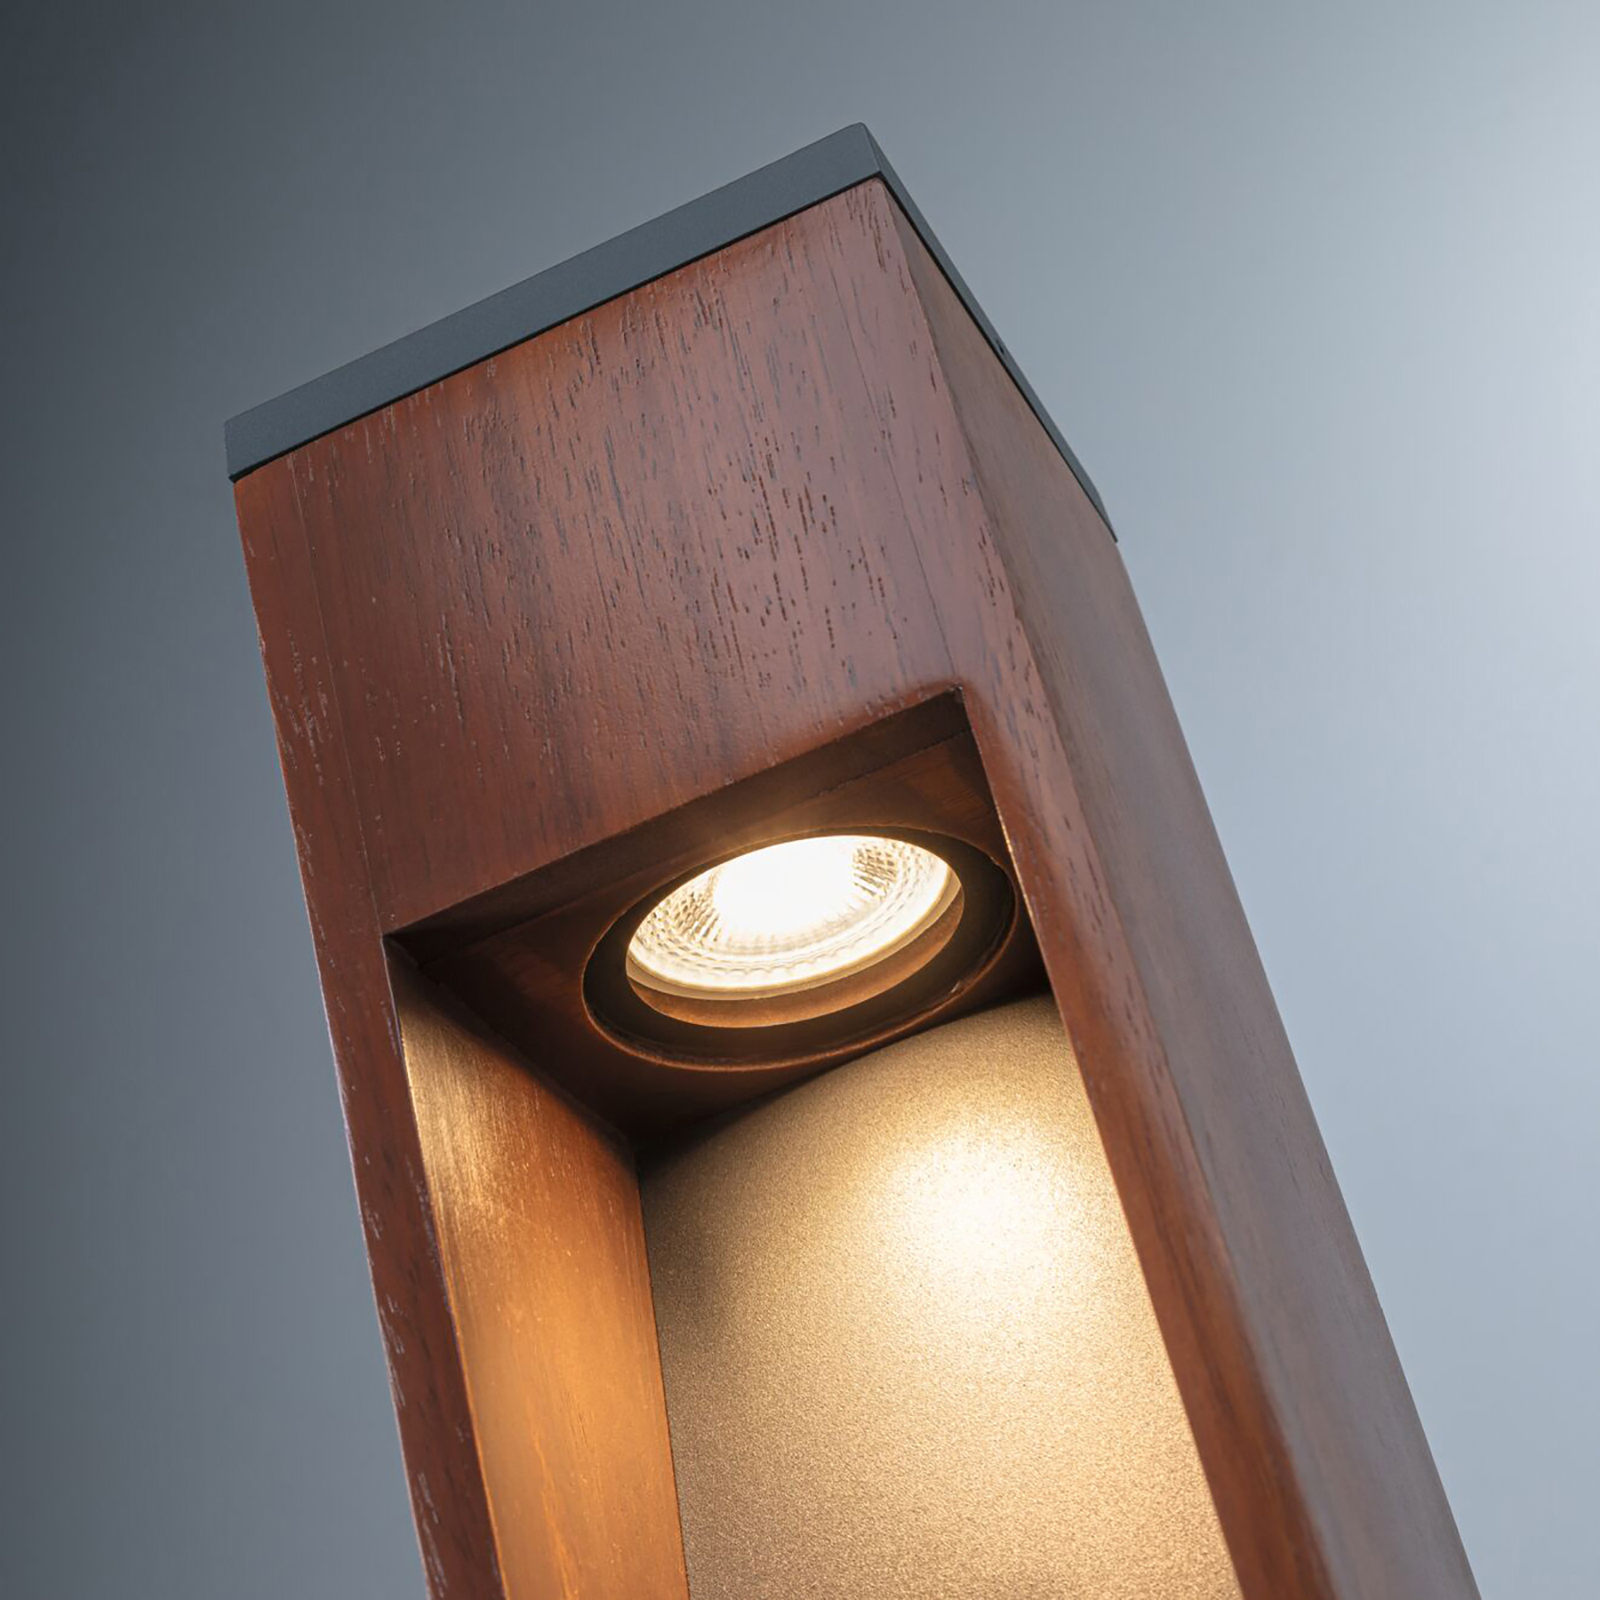 Paulmann Trabia LED-Sockelleuchte Holz, Höhe 60 cm